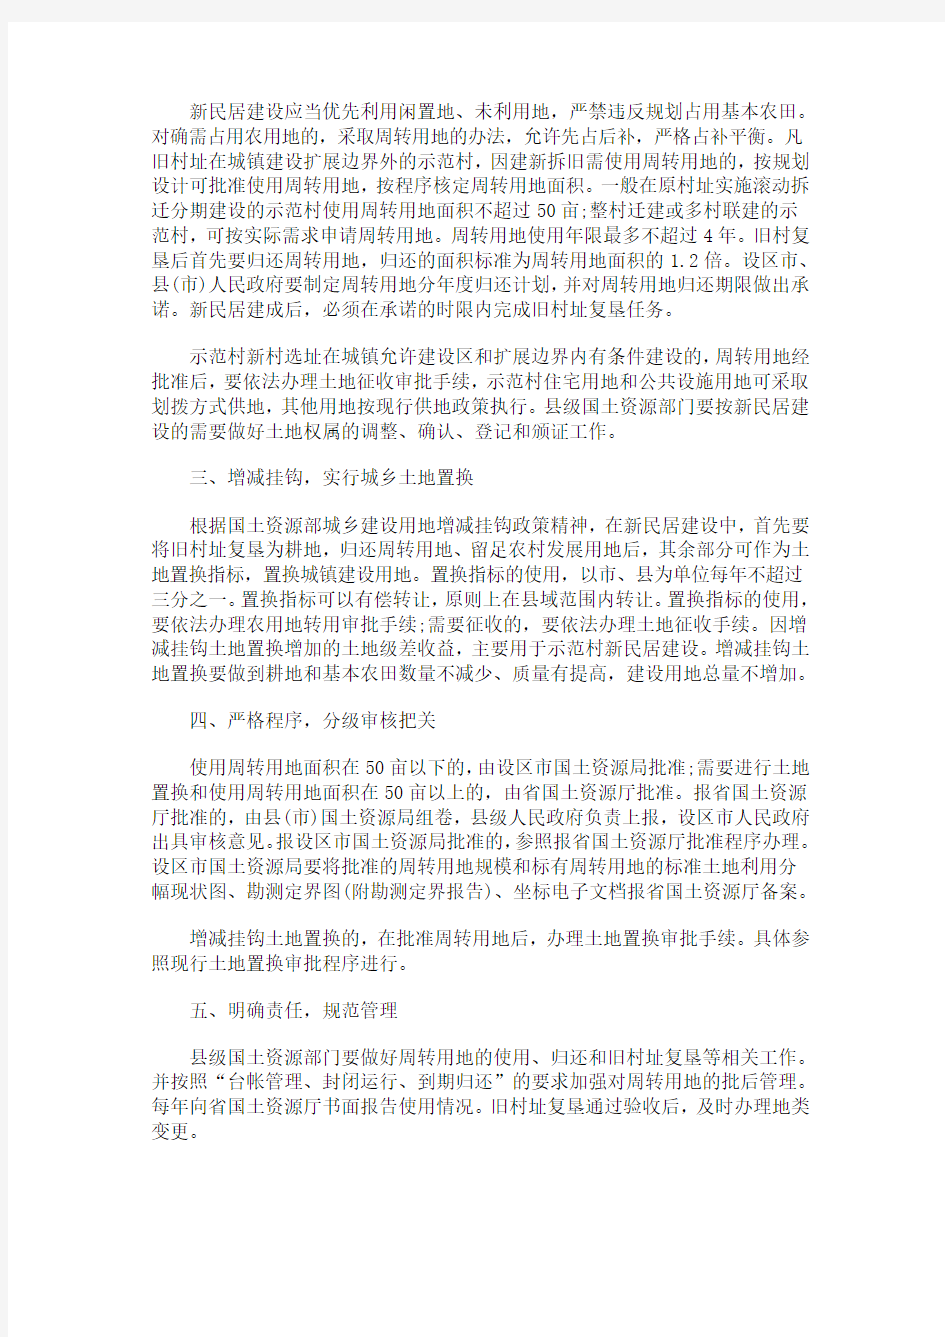 河北省国河北省国土资源厅关于省级新民居示范工程建设用地的意见的应用